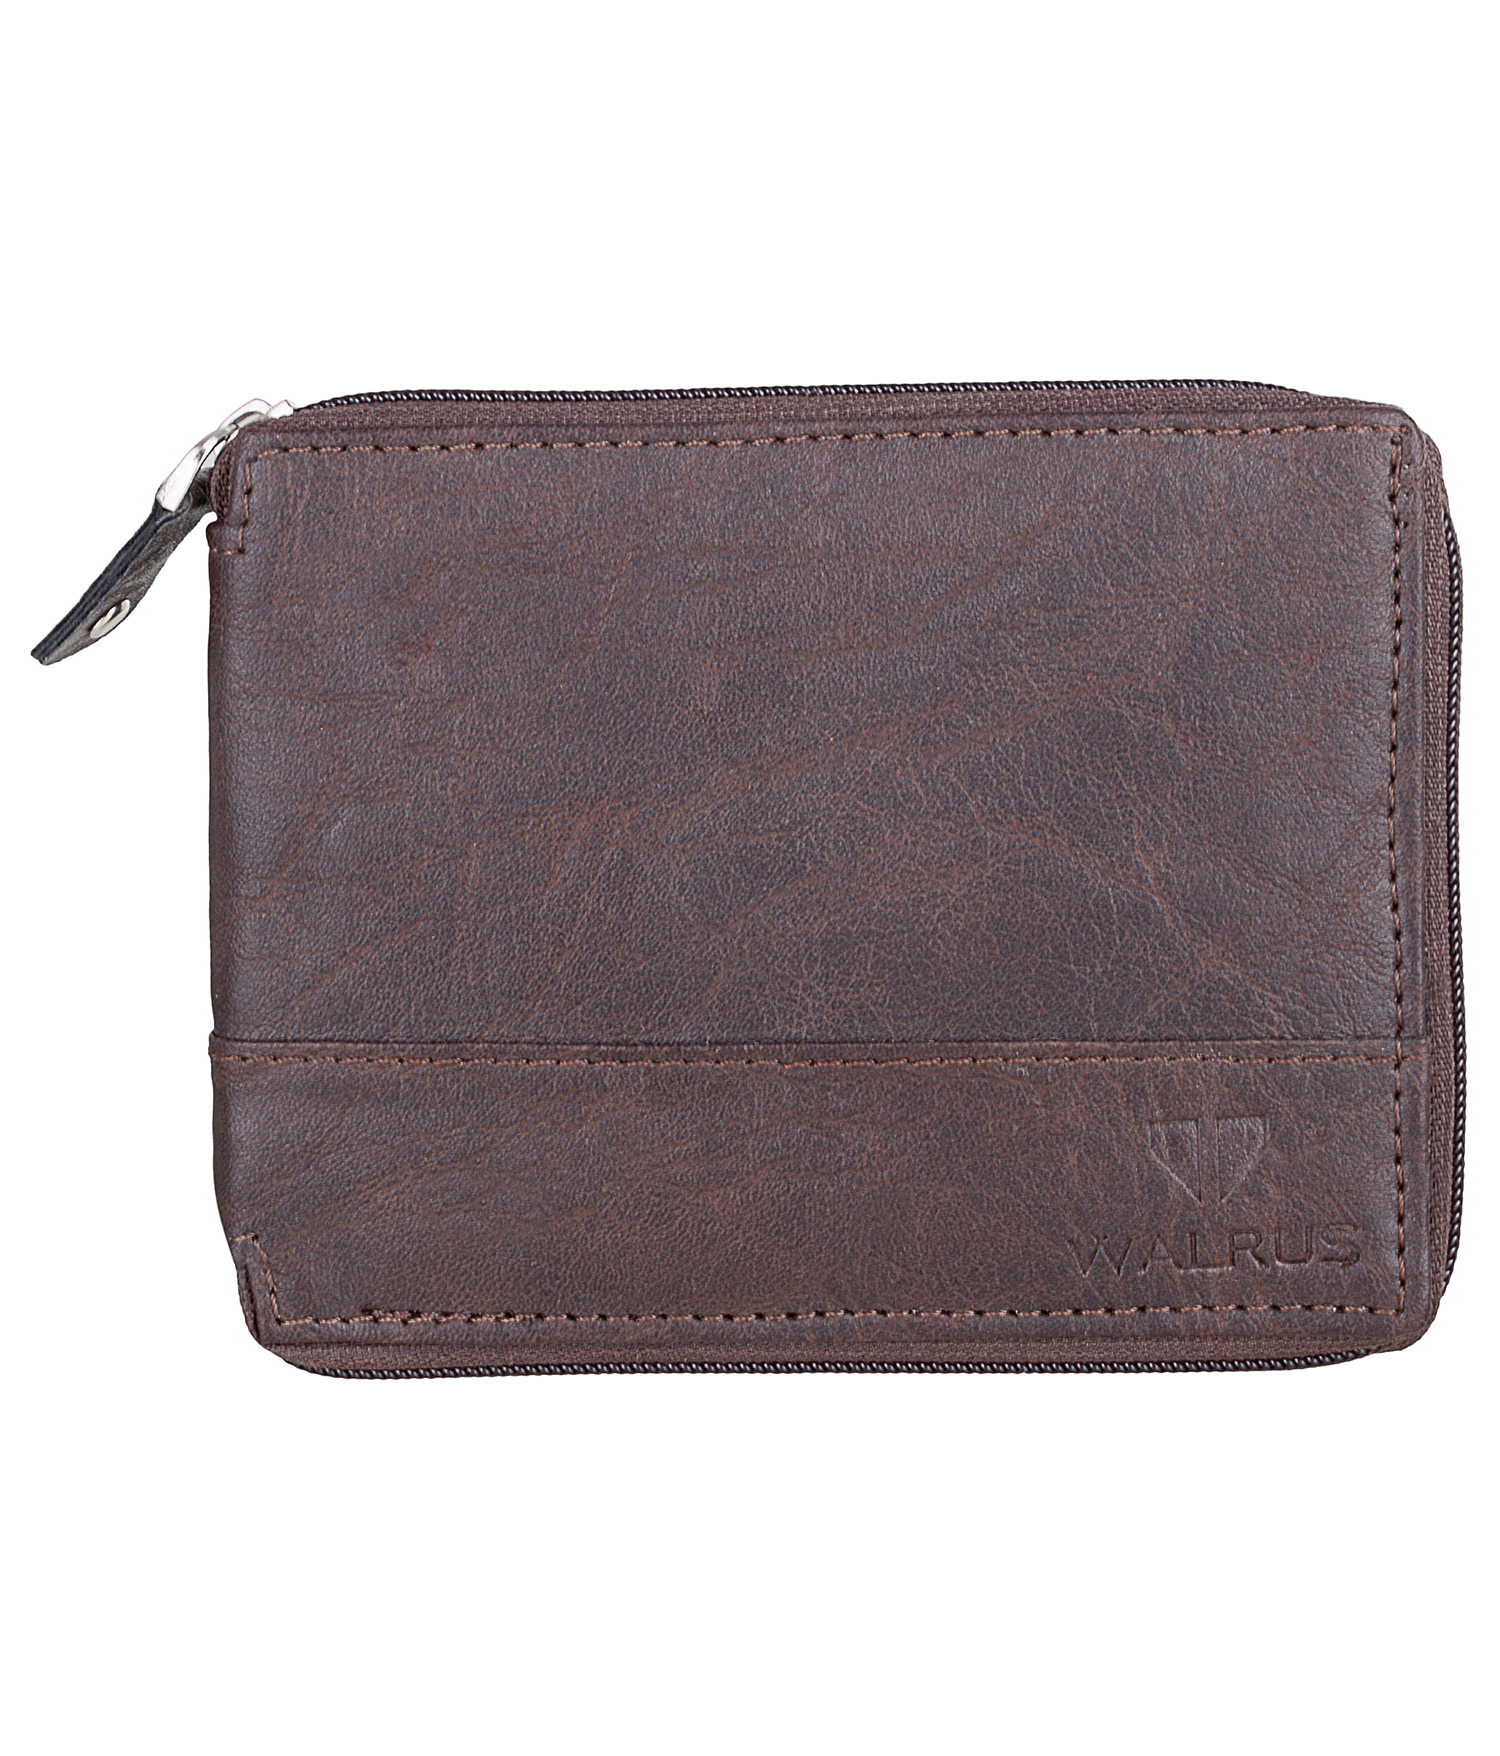 Buy Walrus Zipper Brown Color Men Synthetic Wallet-WW-ZIP-09 Online ...